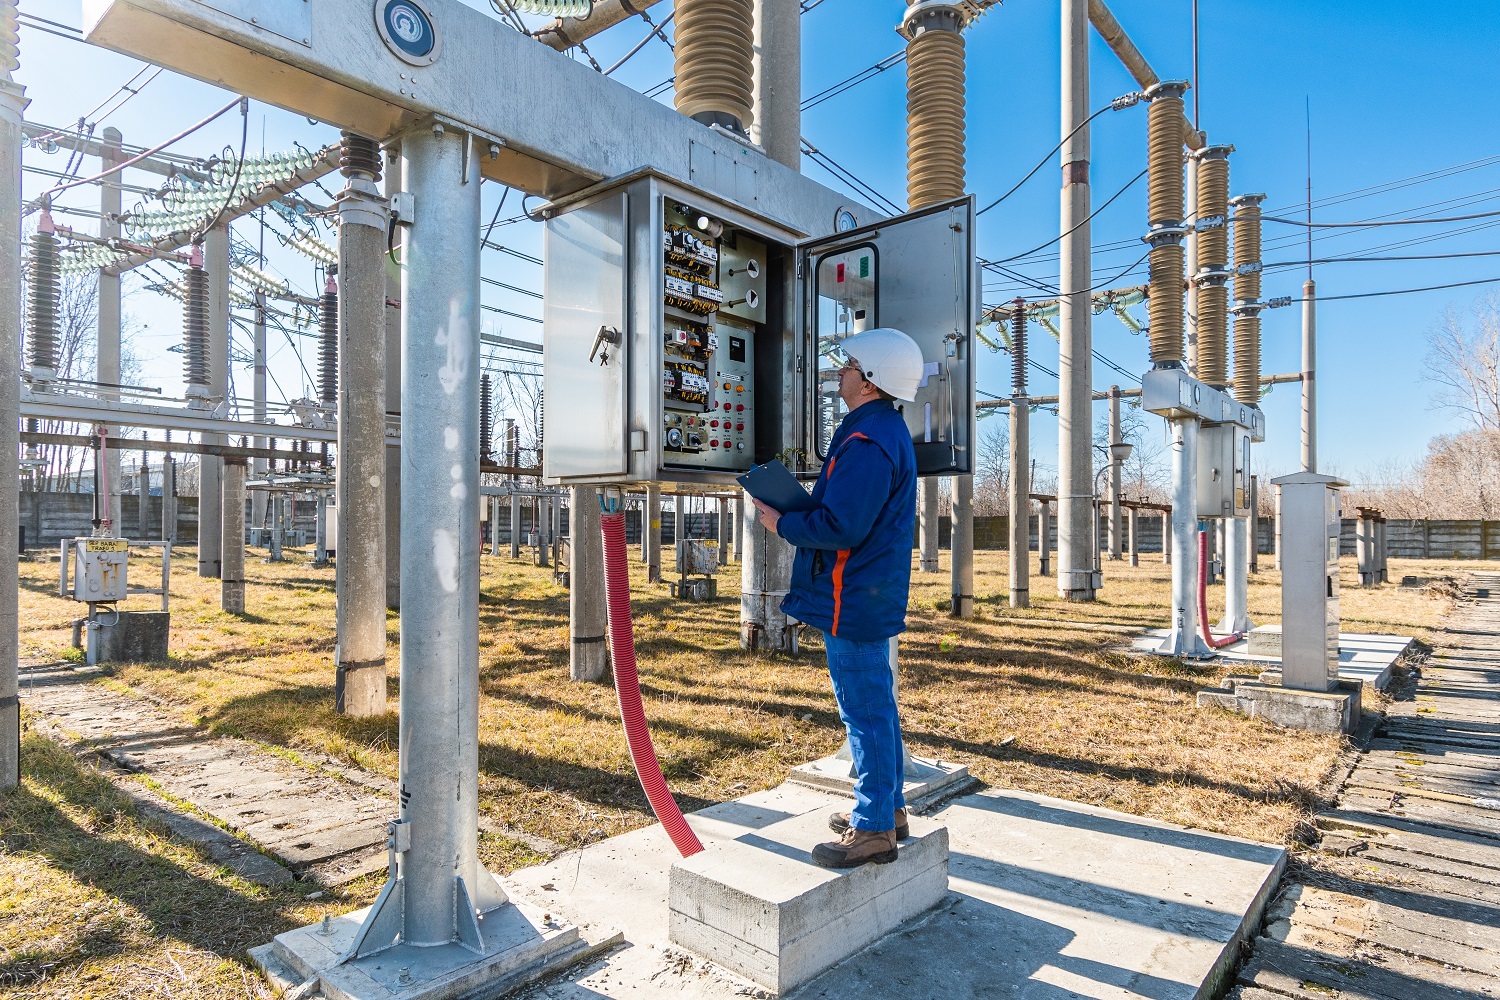 E-Distribuţie Muntenia a fost redenumită Reţele Electrice Muntenia, odată cu achiziţia de către grecii de la PPC a operaţiunilor Enel din România